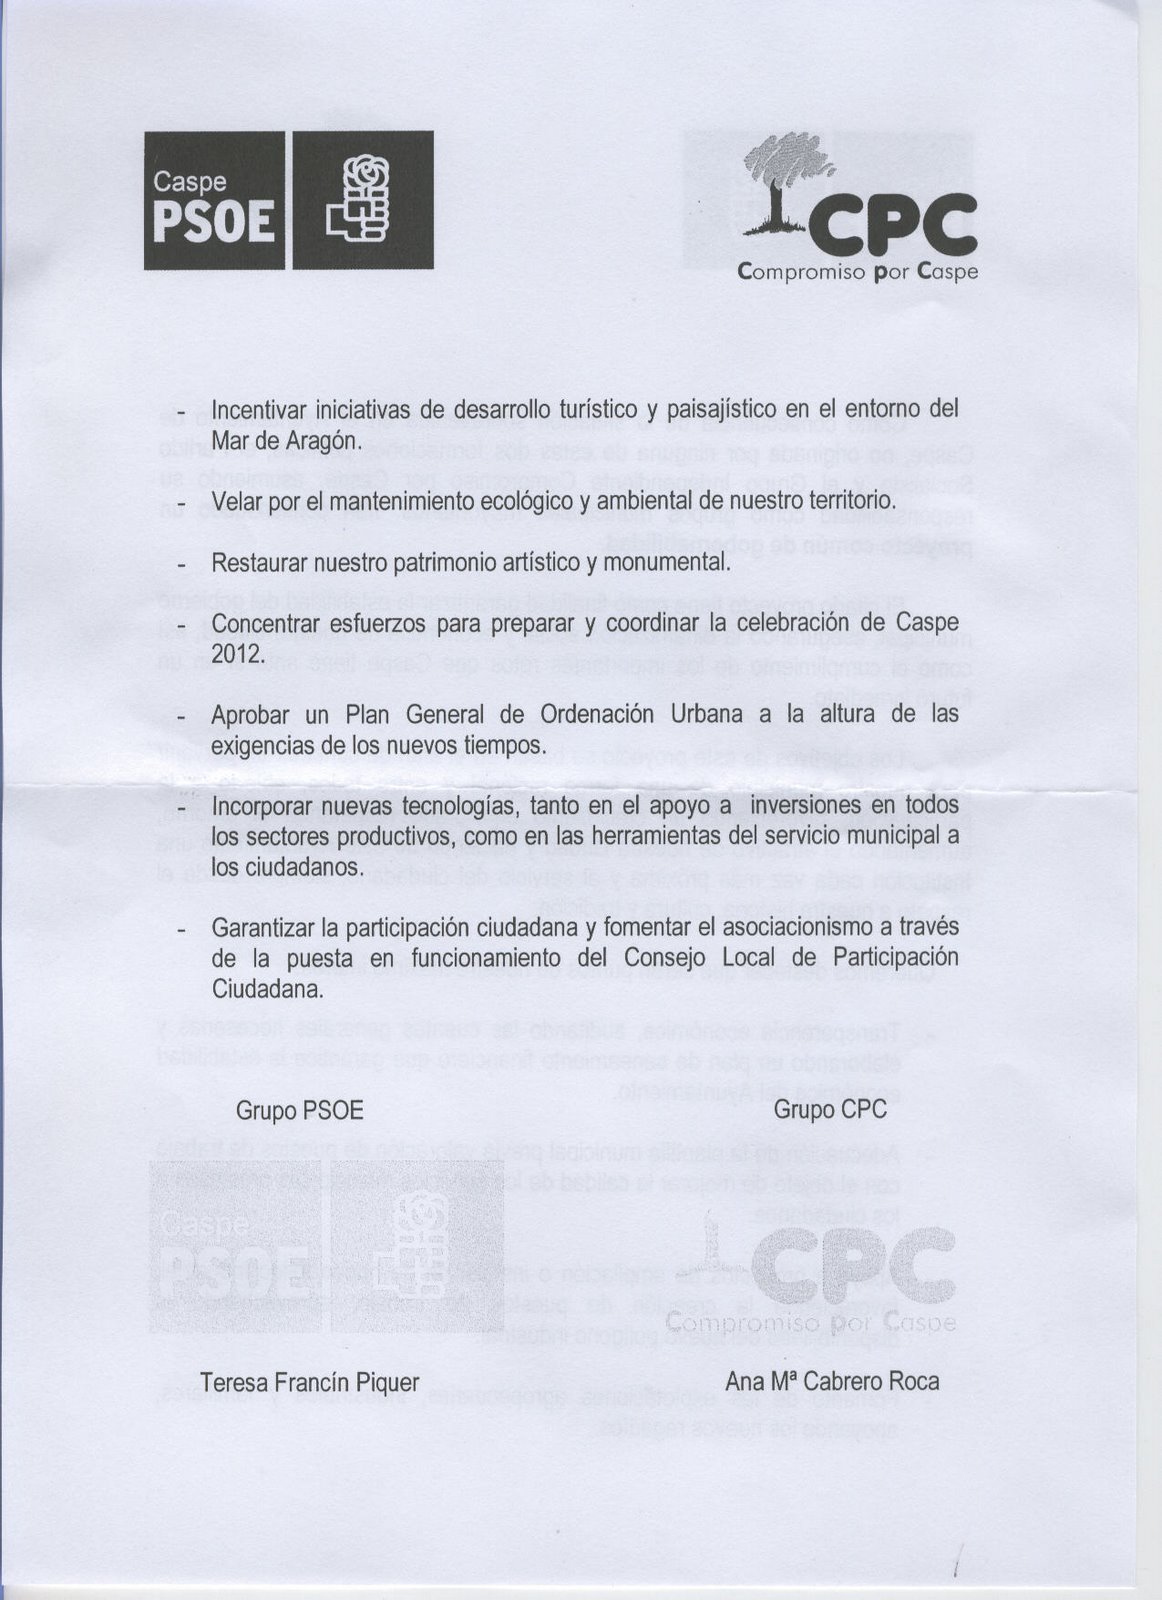 [AYUNTAMIENTO+PSOE-CPC+2.jpg]